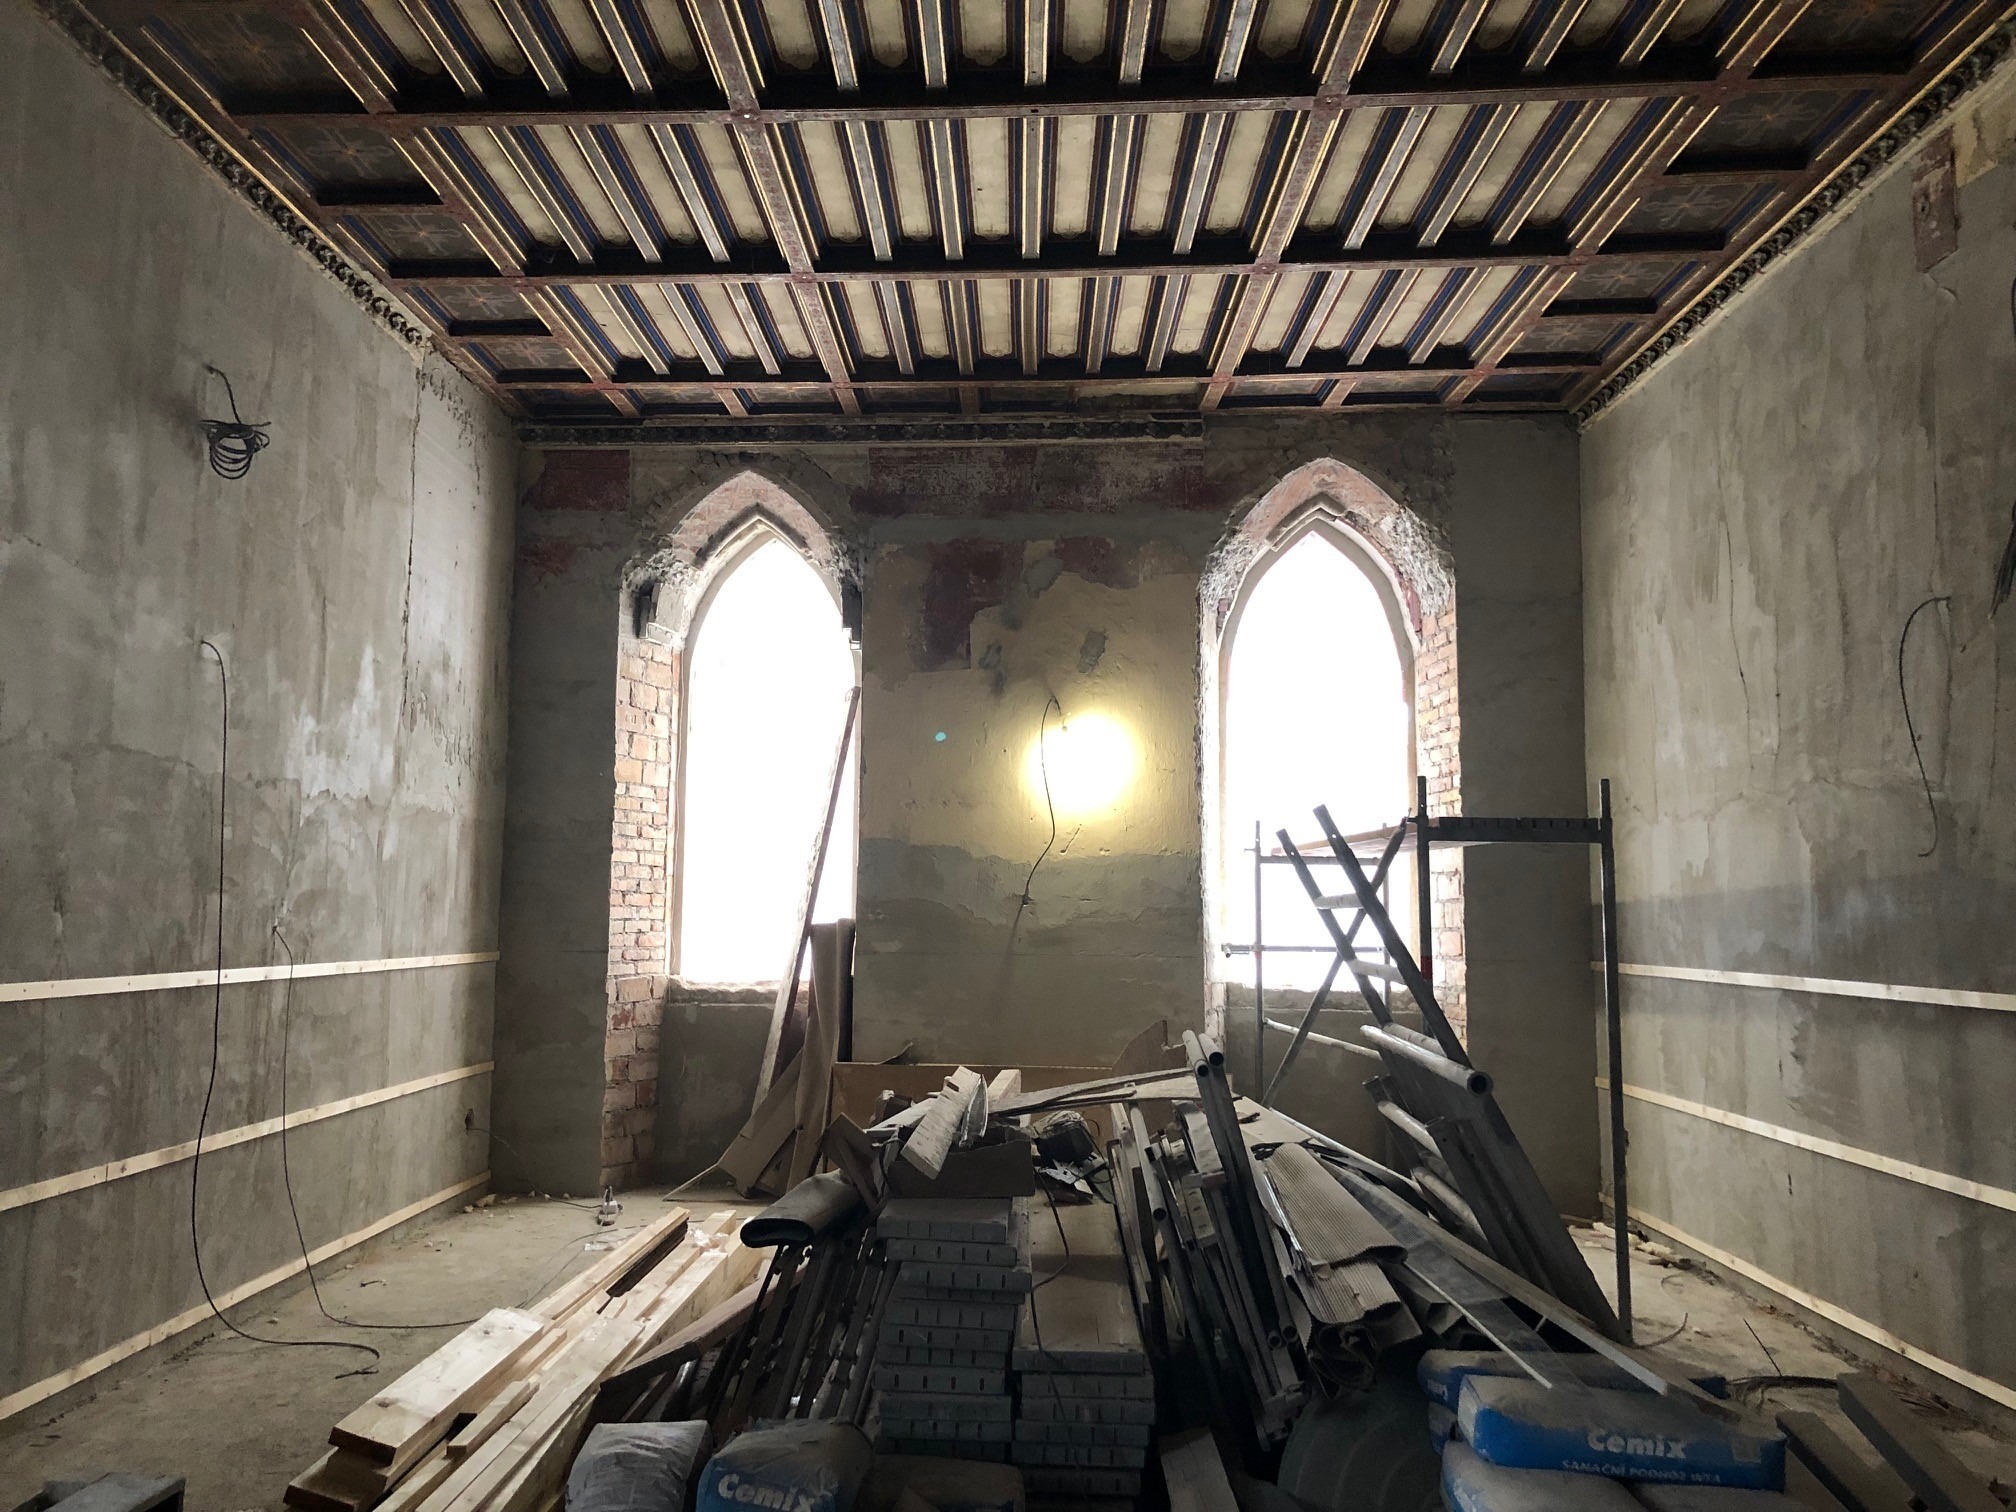 Innsiden av et rom under renovering, med stilaser, planker og murstein i stabler. Et eksponert tretak og høye, gotiske vinduer uten glass.